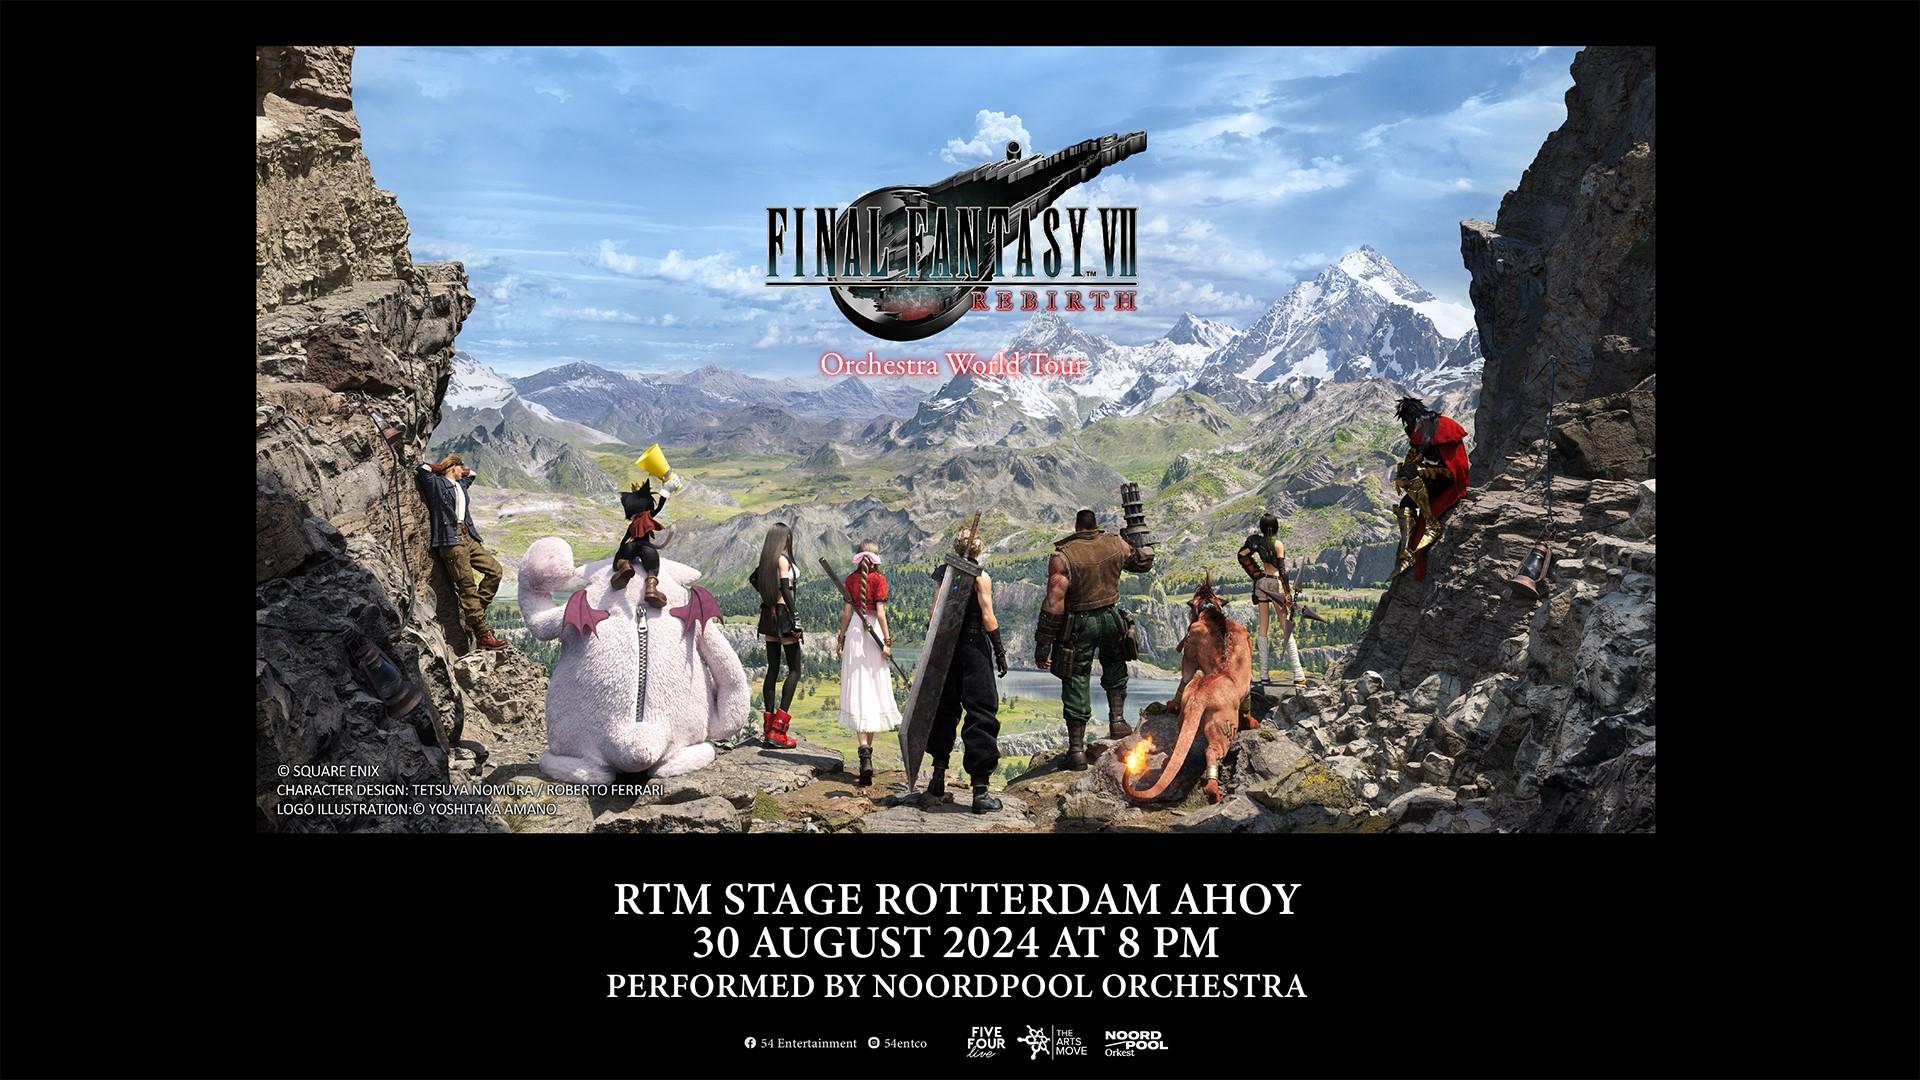 FFVII REBIRTH Orchestra World Tour